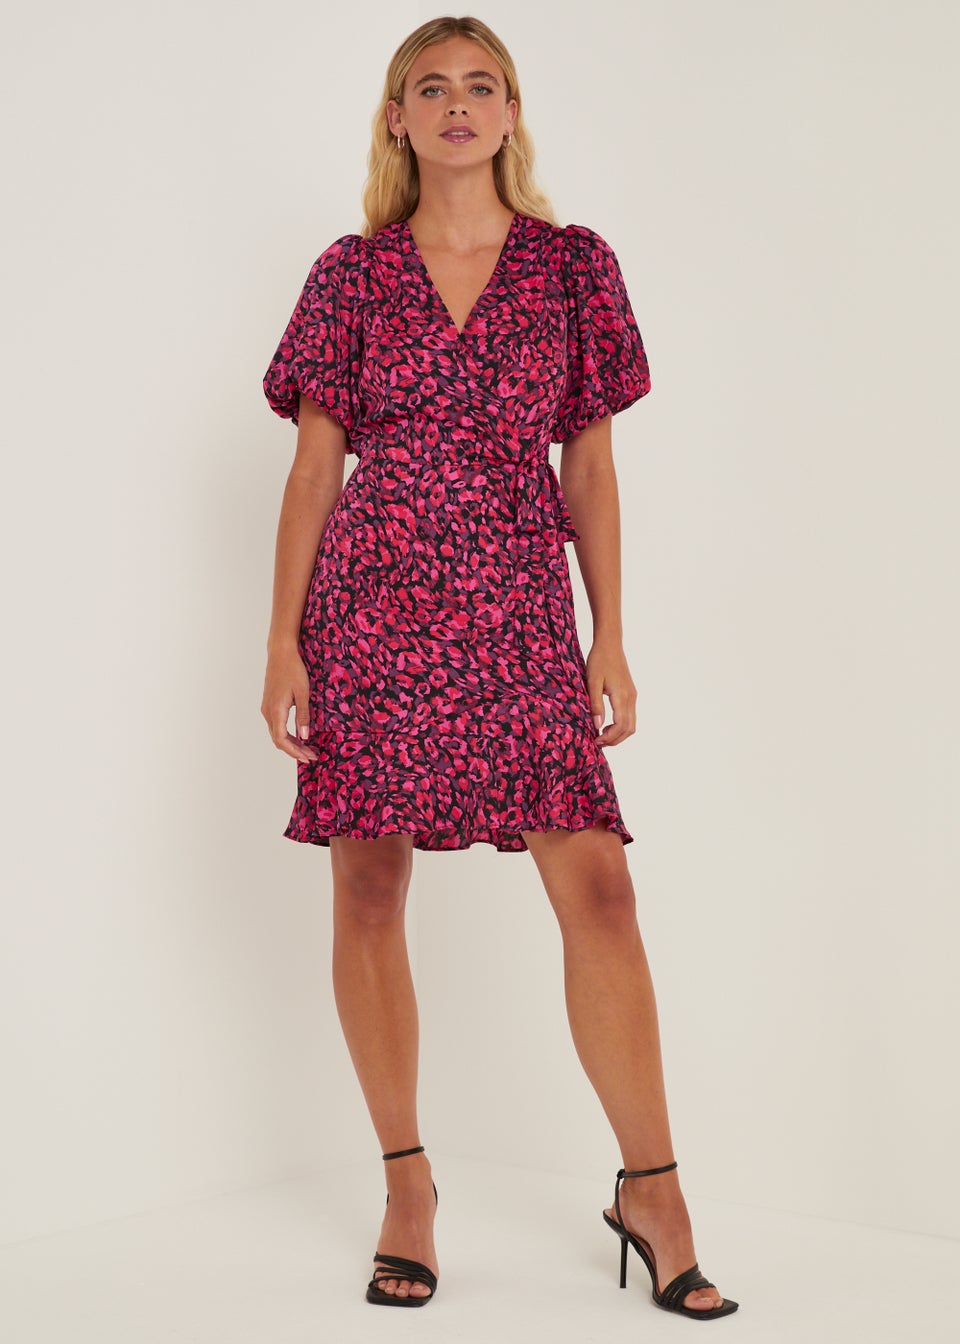 Be Beau Pink Leopard Print Frill Mini Dress